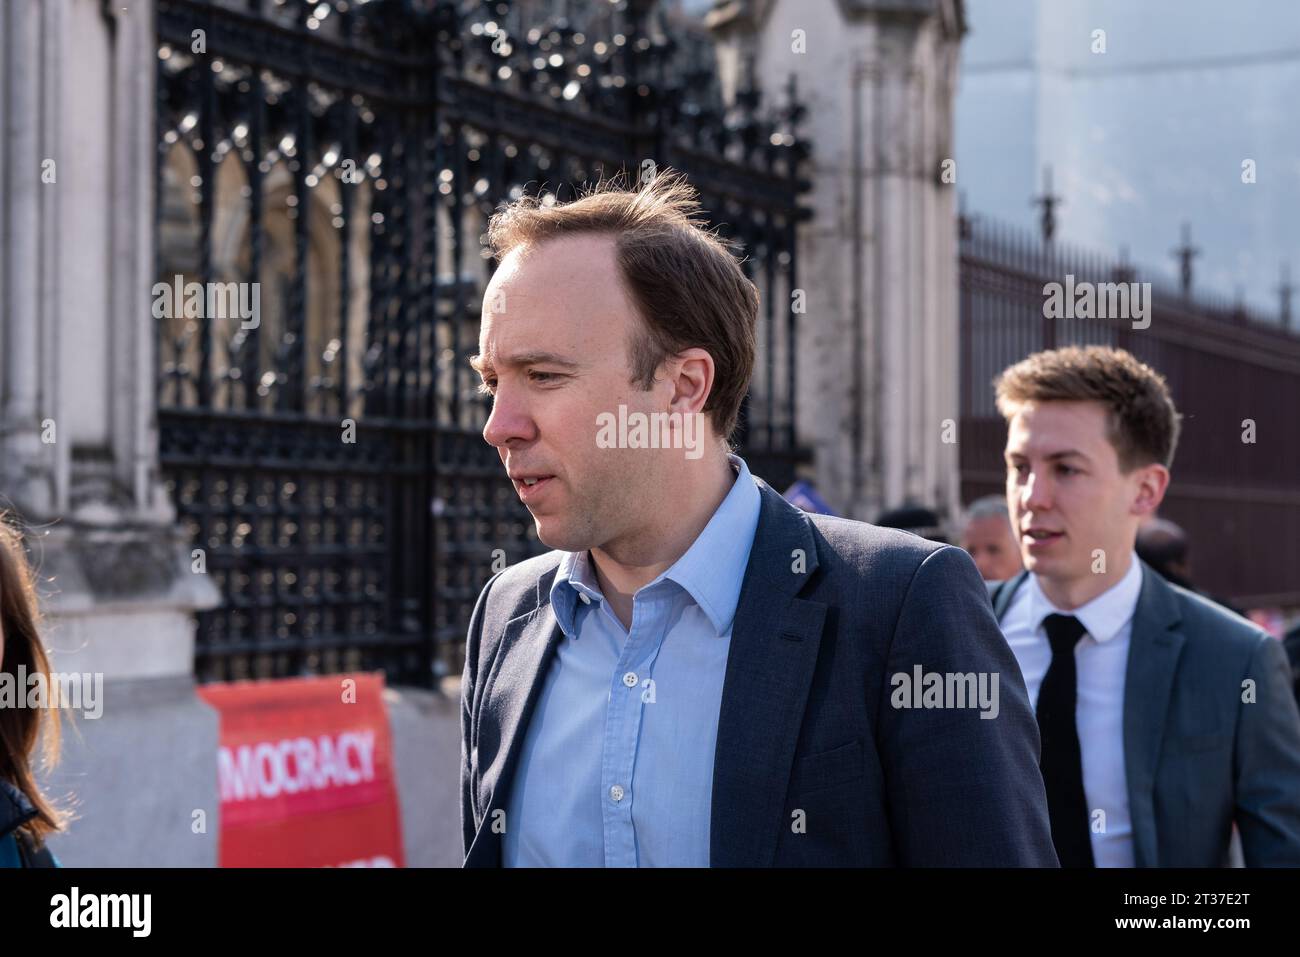 Le député conservateur Matt Hancock arrivant au Palais de Westminster, Londres, Royaume-Uni le 29 mars 2019, la date qui aurait dû voir le Royaume-Uni quitter l'UE Banque D'Images